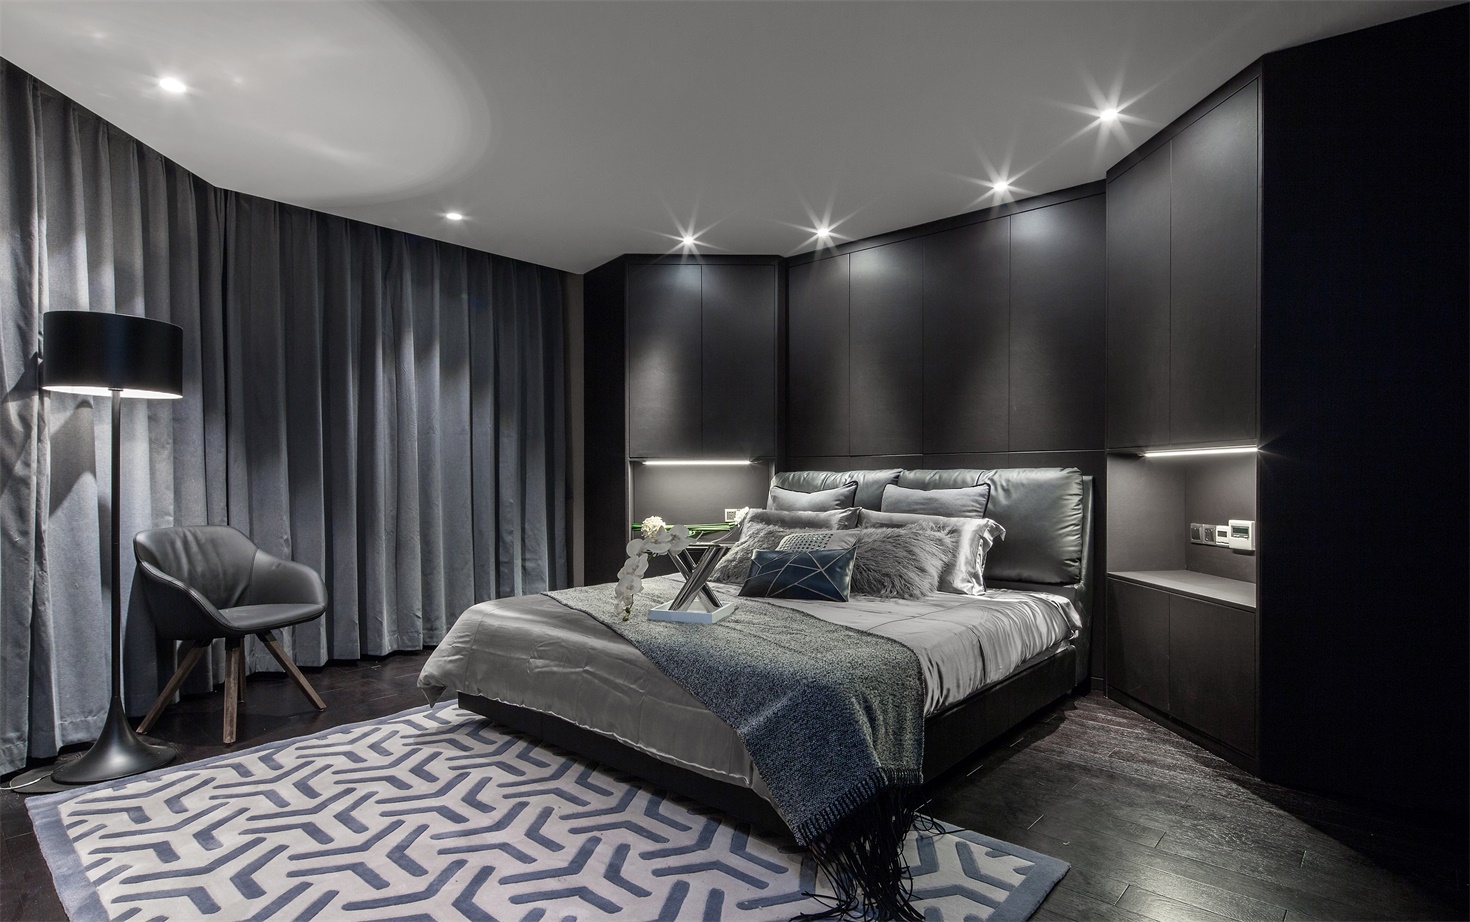 卧室设计刚柔并济，吊顶射灯缓解黑色背景墙带来的高冷之感，营造出雅致大气的空间感。